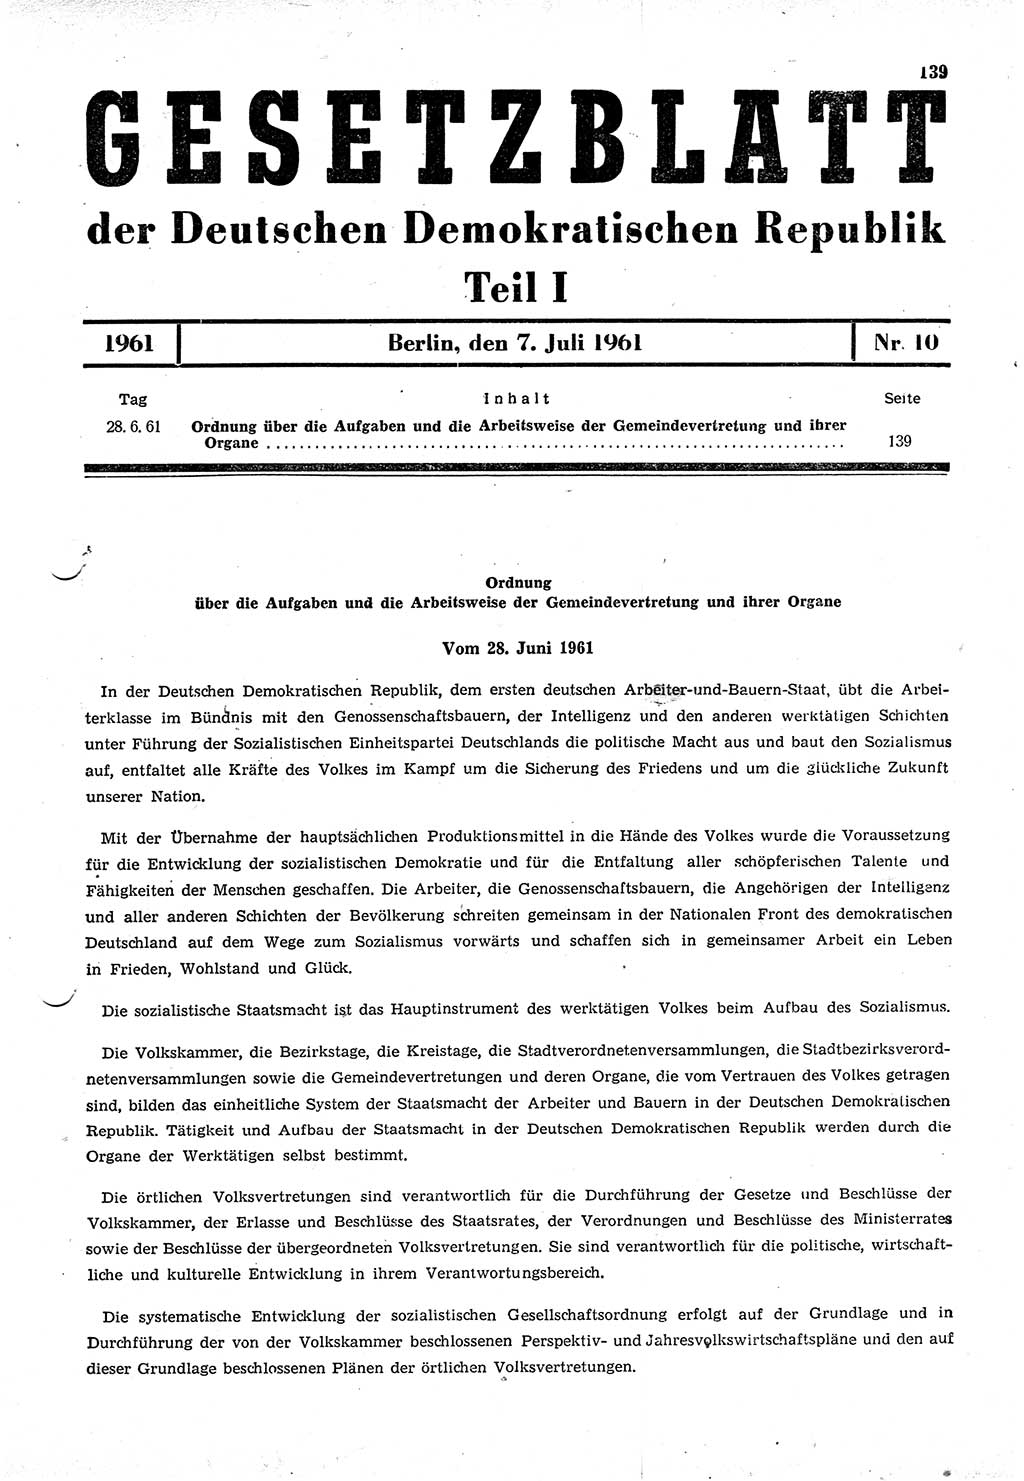 Gesetzblatt (GBl.) der Deutschen Demokratischen Republik (DDR) Teil Ⅰ 1961, Seite 139 (GBl. DDR Ⅰ 1961, S. 139)